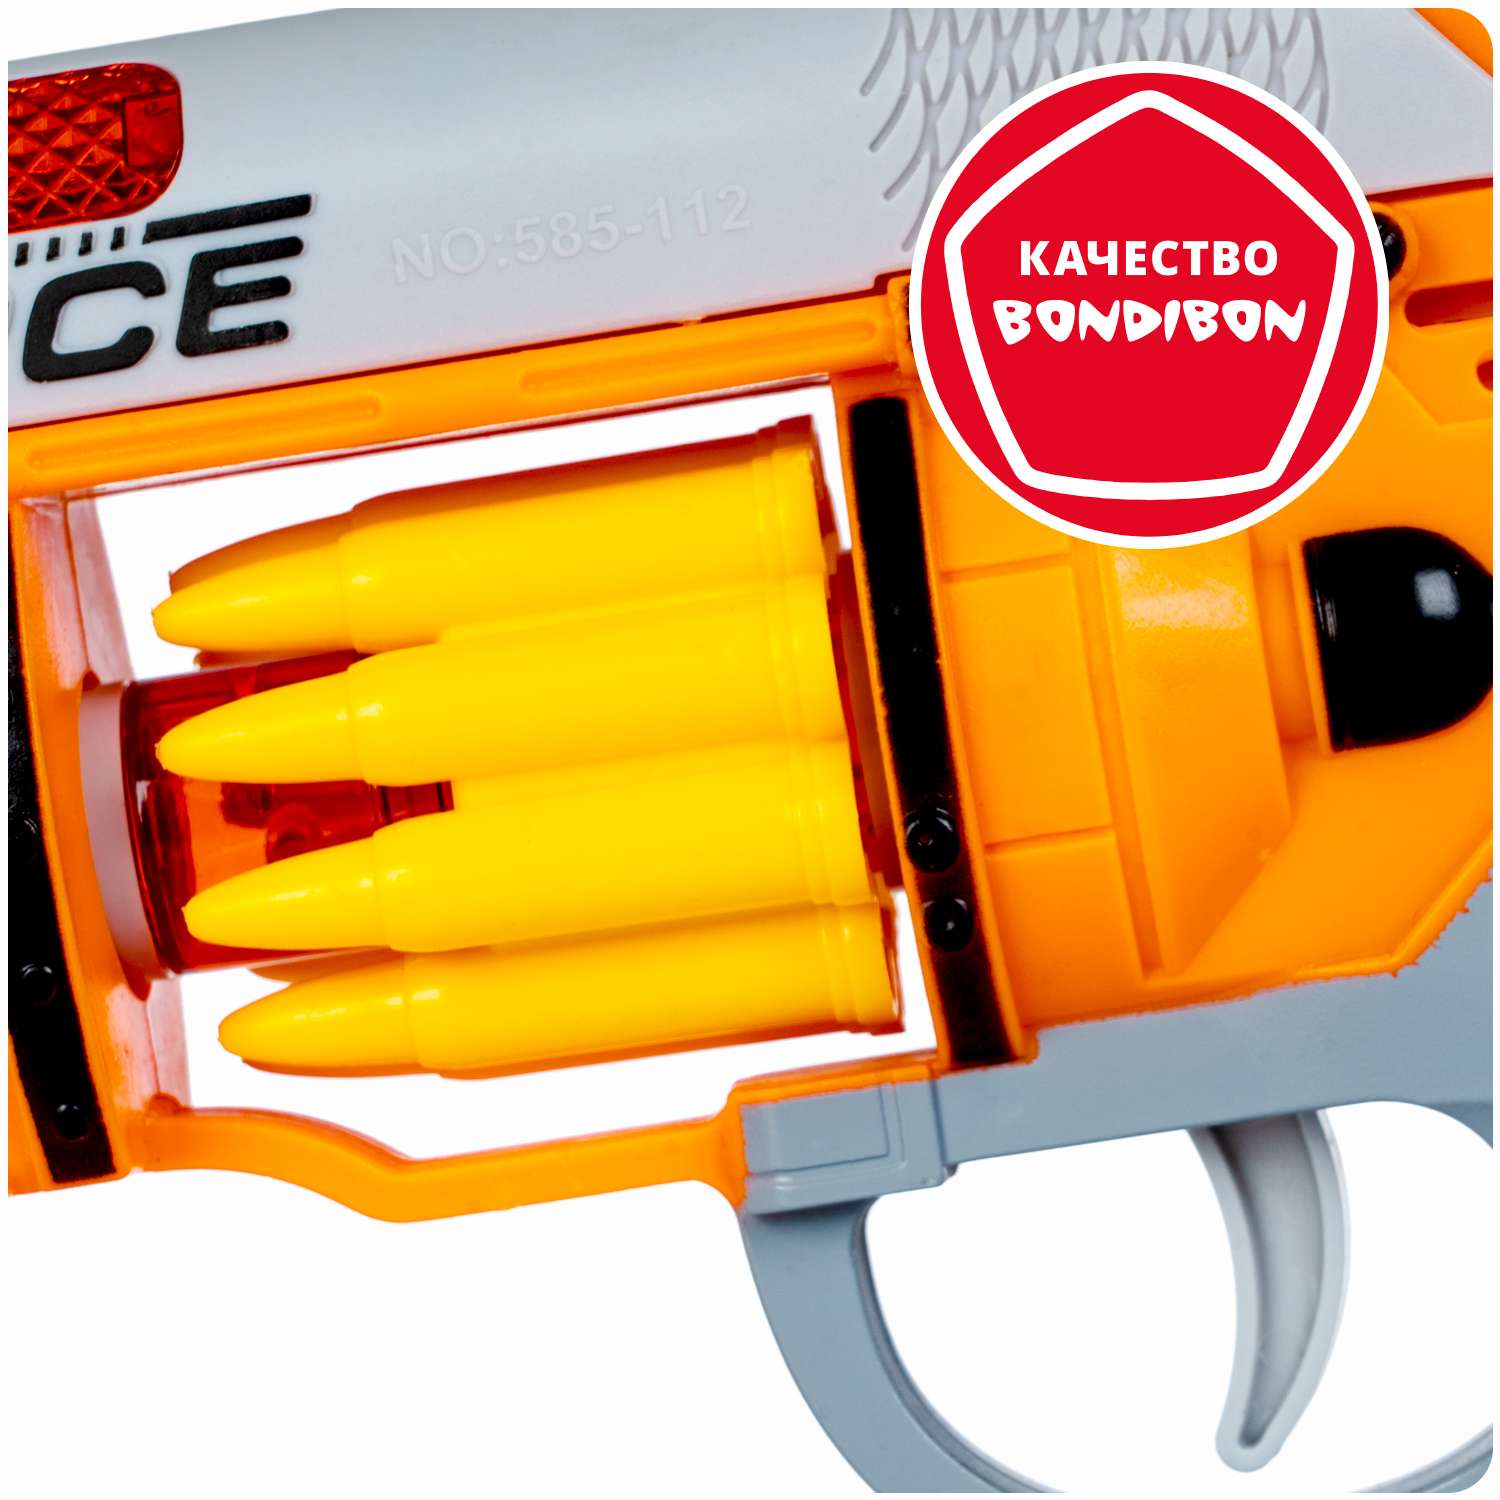 Пистолет BONDIBON Фантастика со свето-звуковым эффектом и подвижными элементами серебристо-оранжевого цвета - фото 11